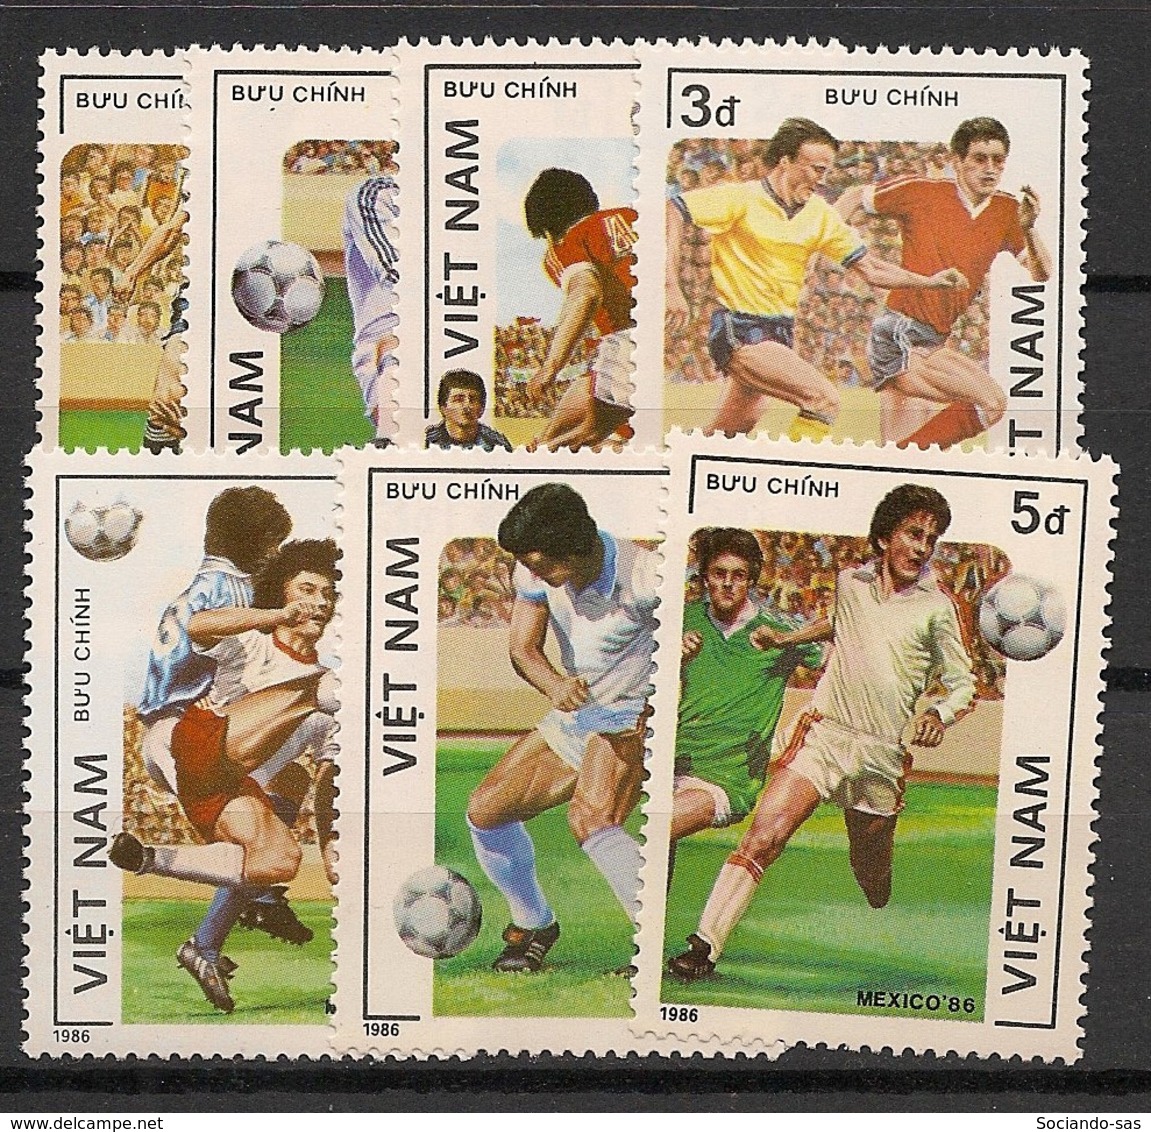 Vietnam - 1986 - N°Yv. 670 à 676 - Football World Cup Mexico - Neuf Luxe ** / MNH / Postfrisch - Vietnam